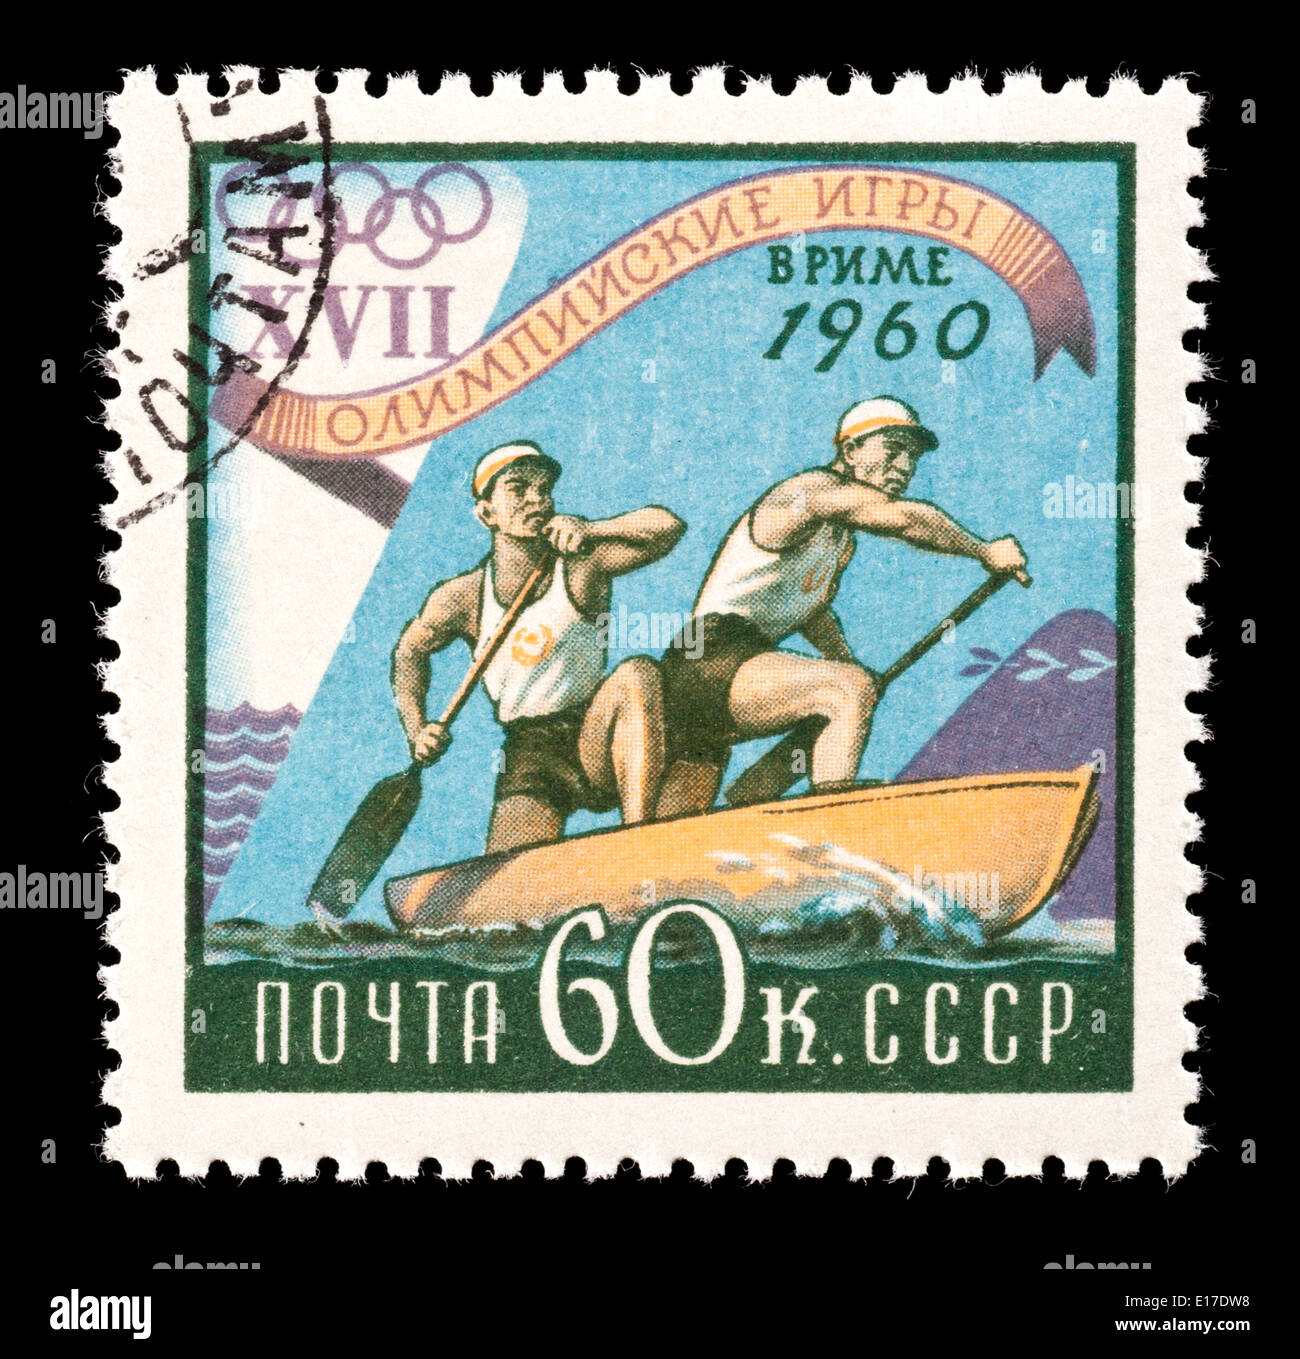 Timbre-poste de l'Union soviétique illustrant les canoéistes pagayage, émis pour les 1960 Jeux Olympiques d'été de 1920 à Rome. Banque D'Images